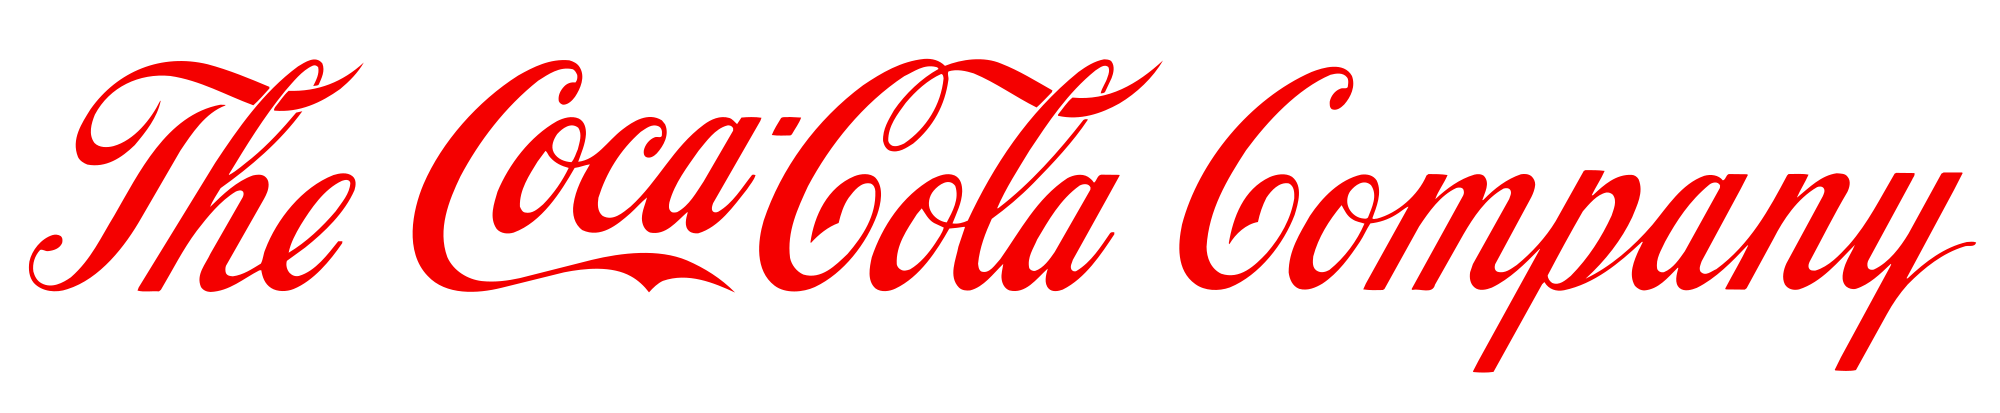 The Coca Cola compagny